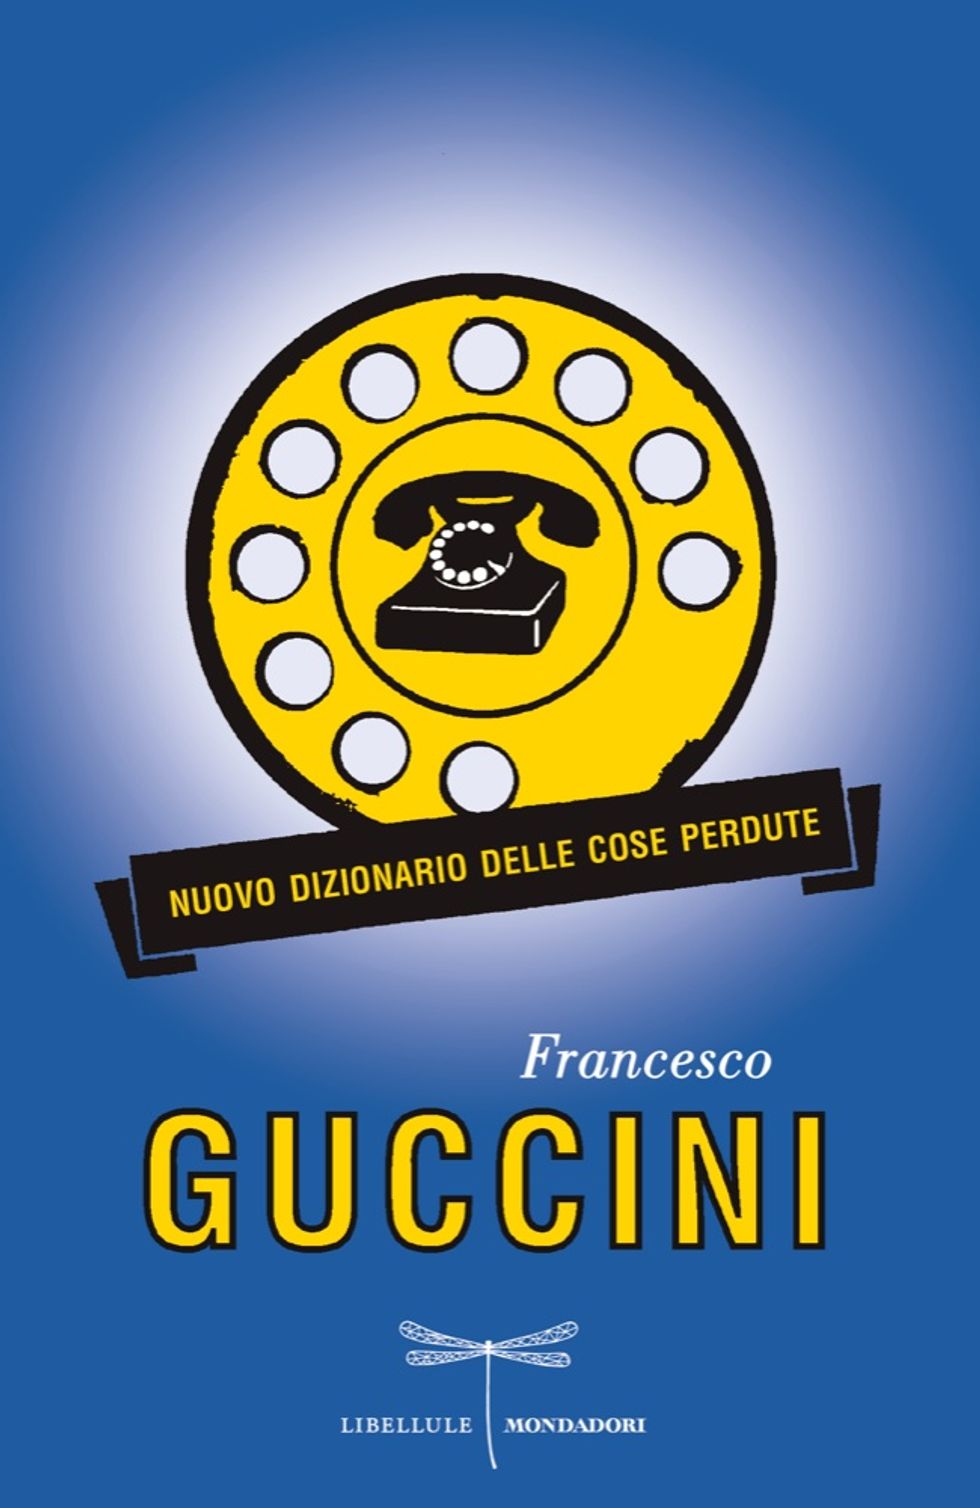 Francesco Guccini, il "Nuovo dizionario delle cose perdute"